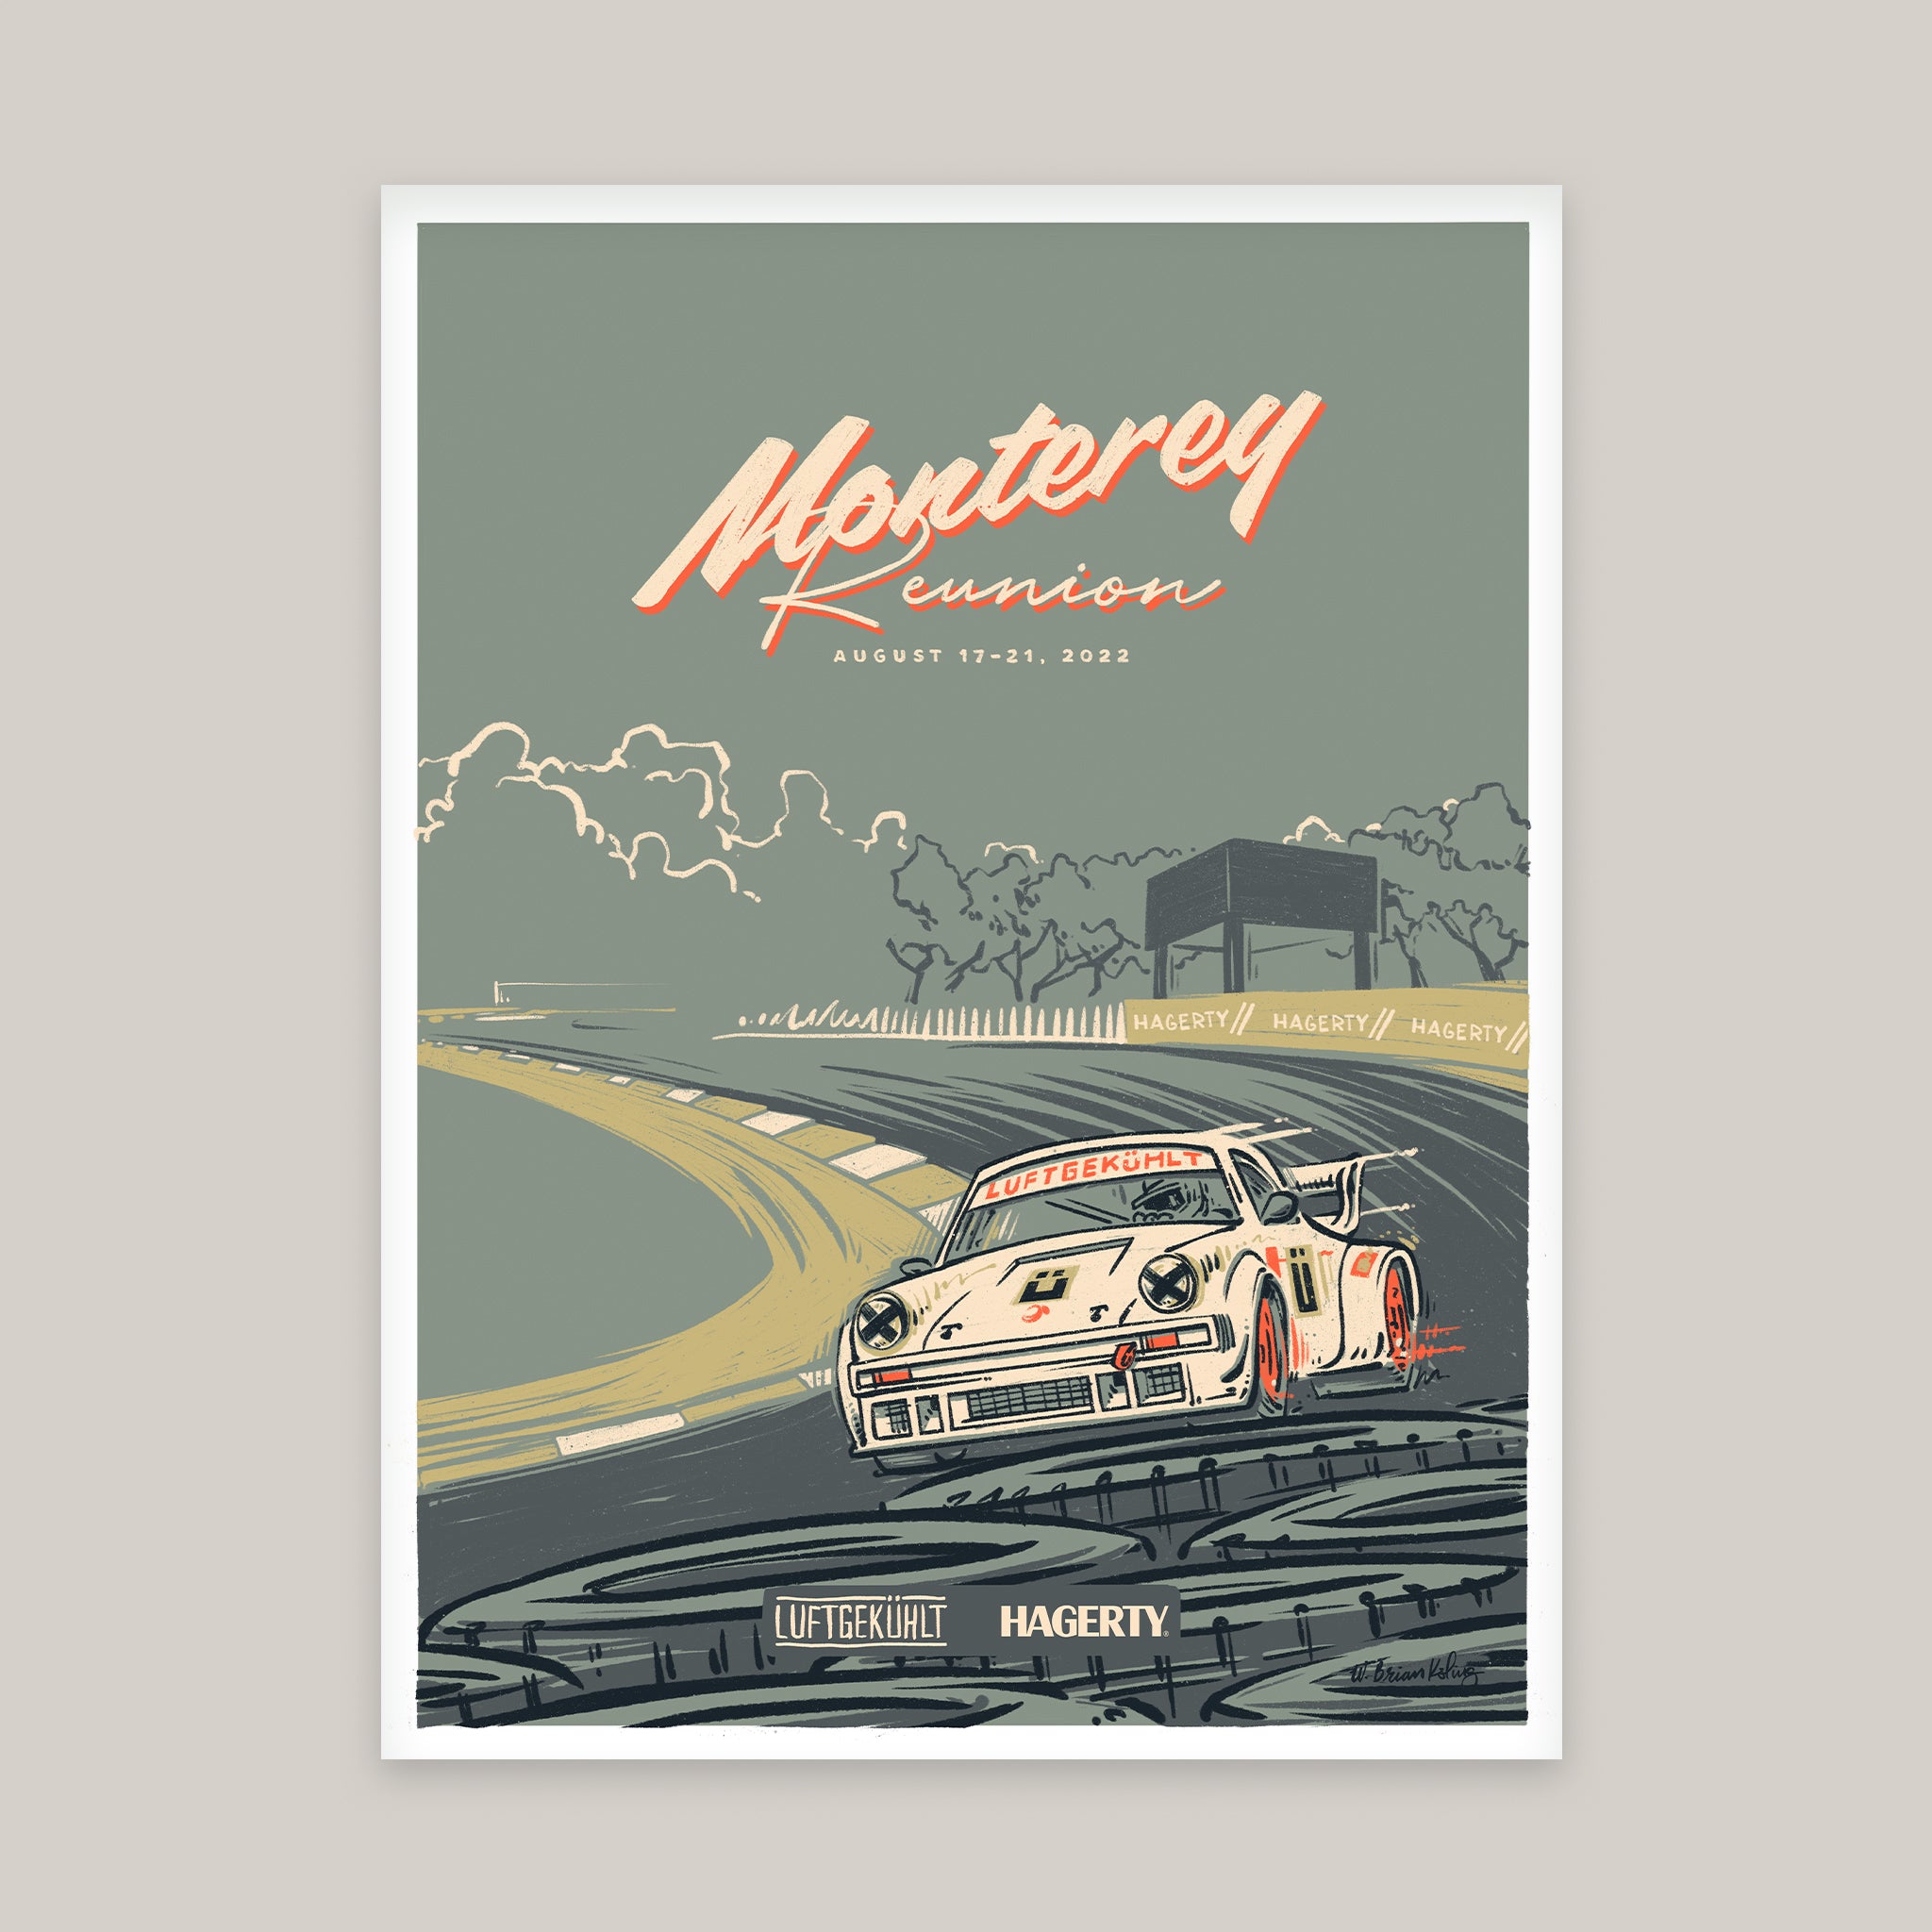 Luftgekult | Hagerty Monterey Poster